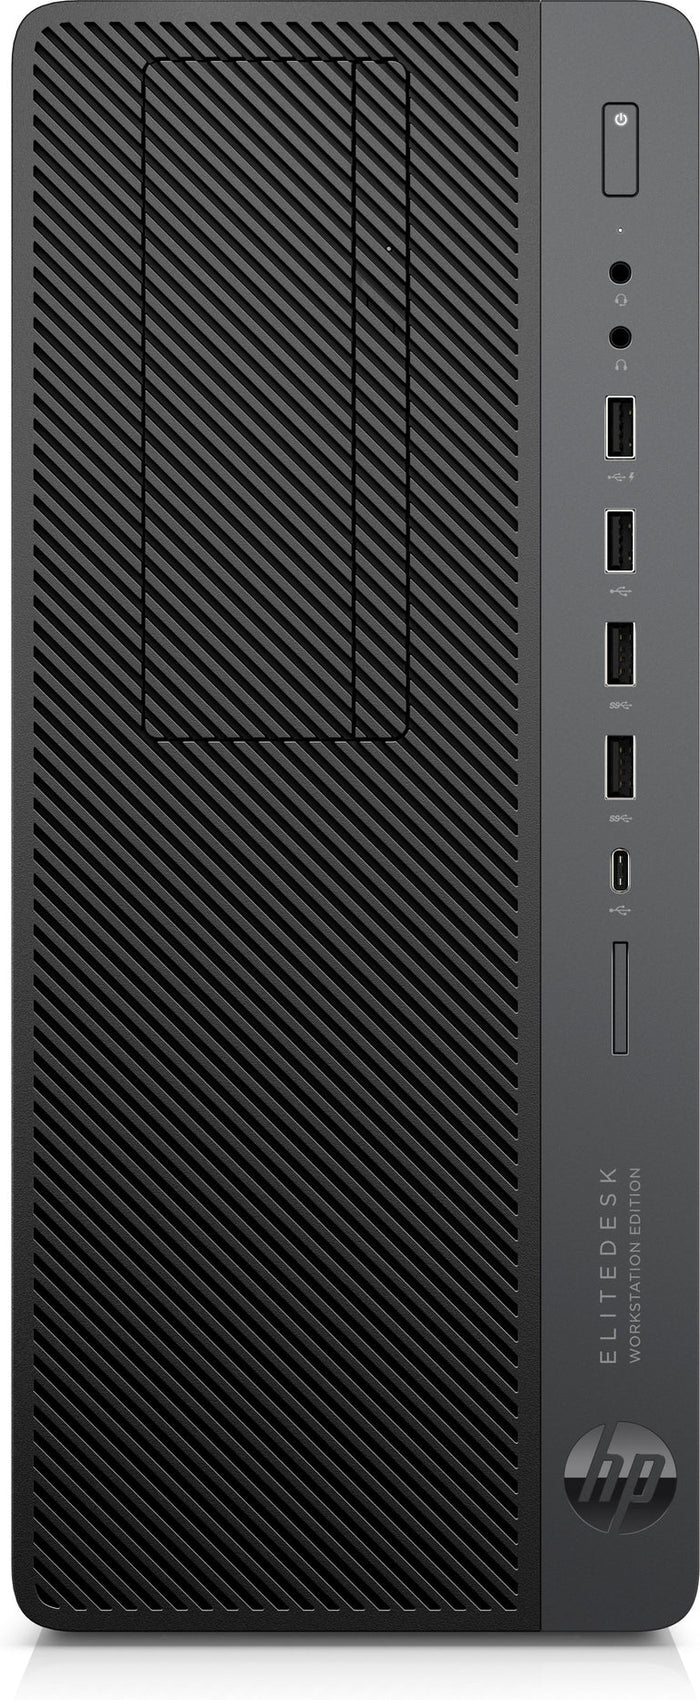 HP EliteDesk 800 G4 WKS Tower i7-8700 [Hexa] 3.20GHz USB-C 16GB DDR4 1TB NVMe + 256GB NVMe [Marked Casing]